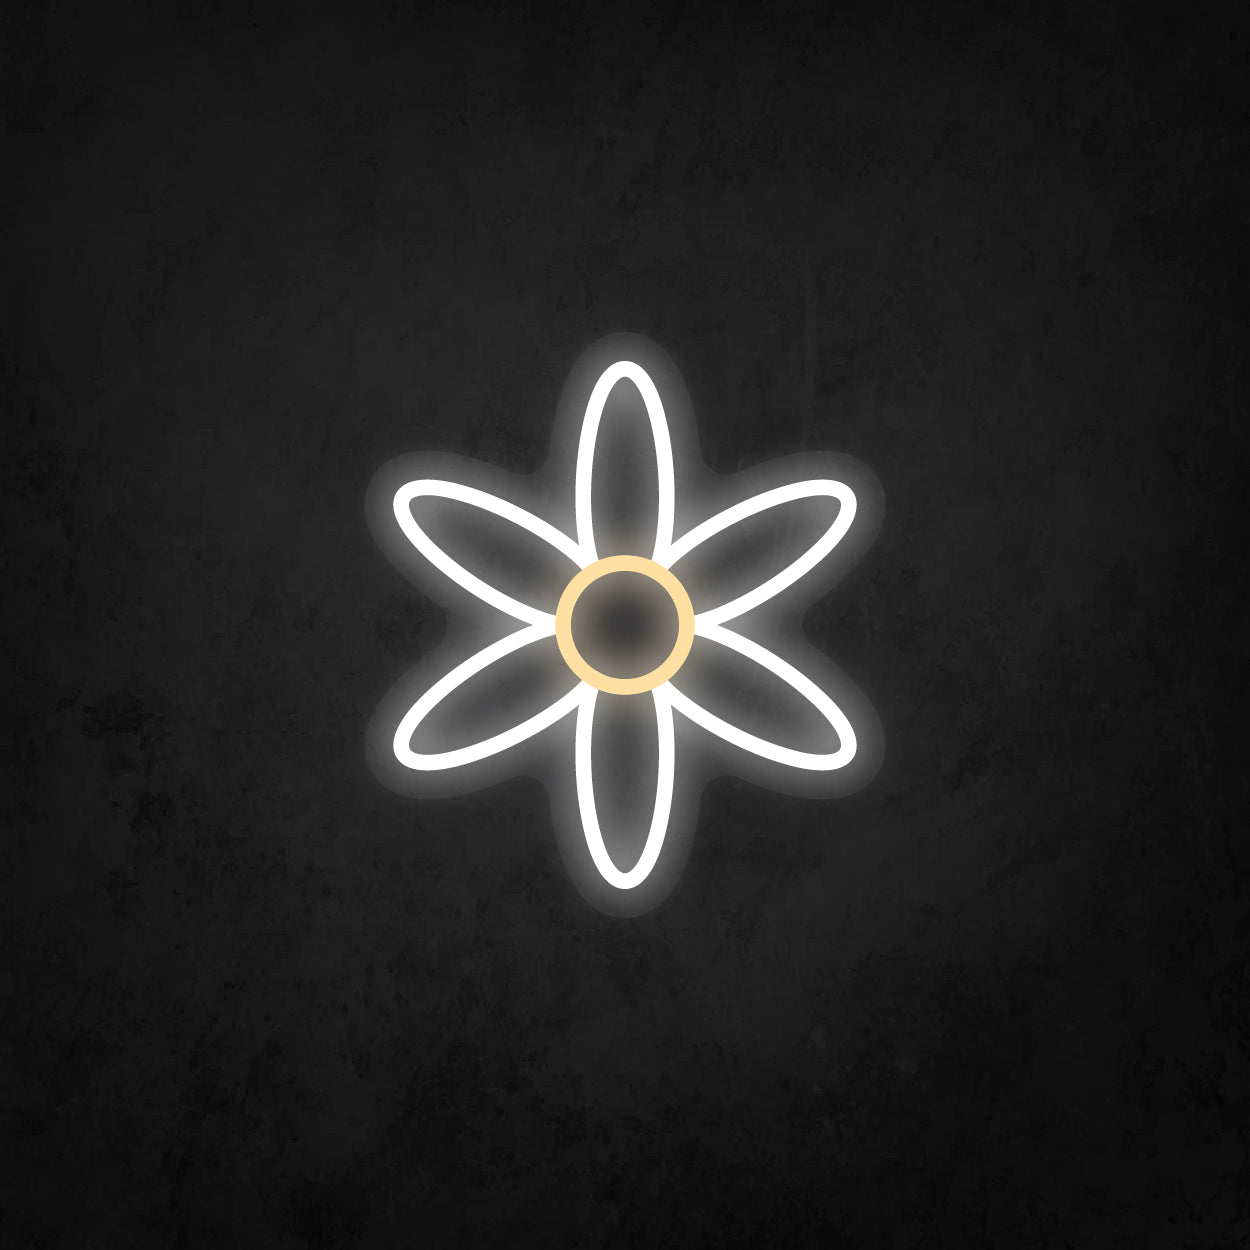 LED Neon Sign - Flower